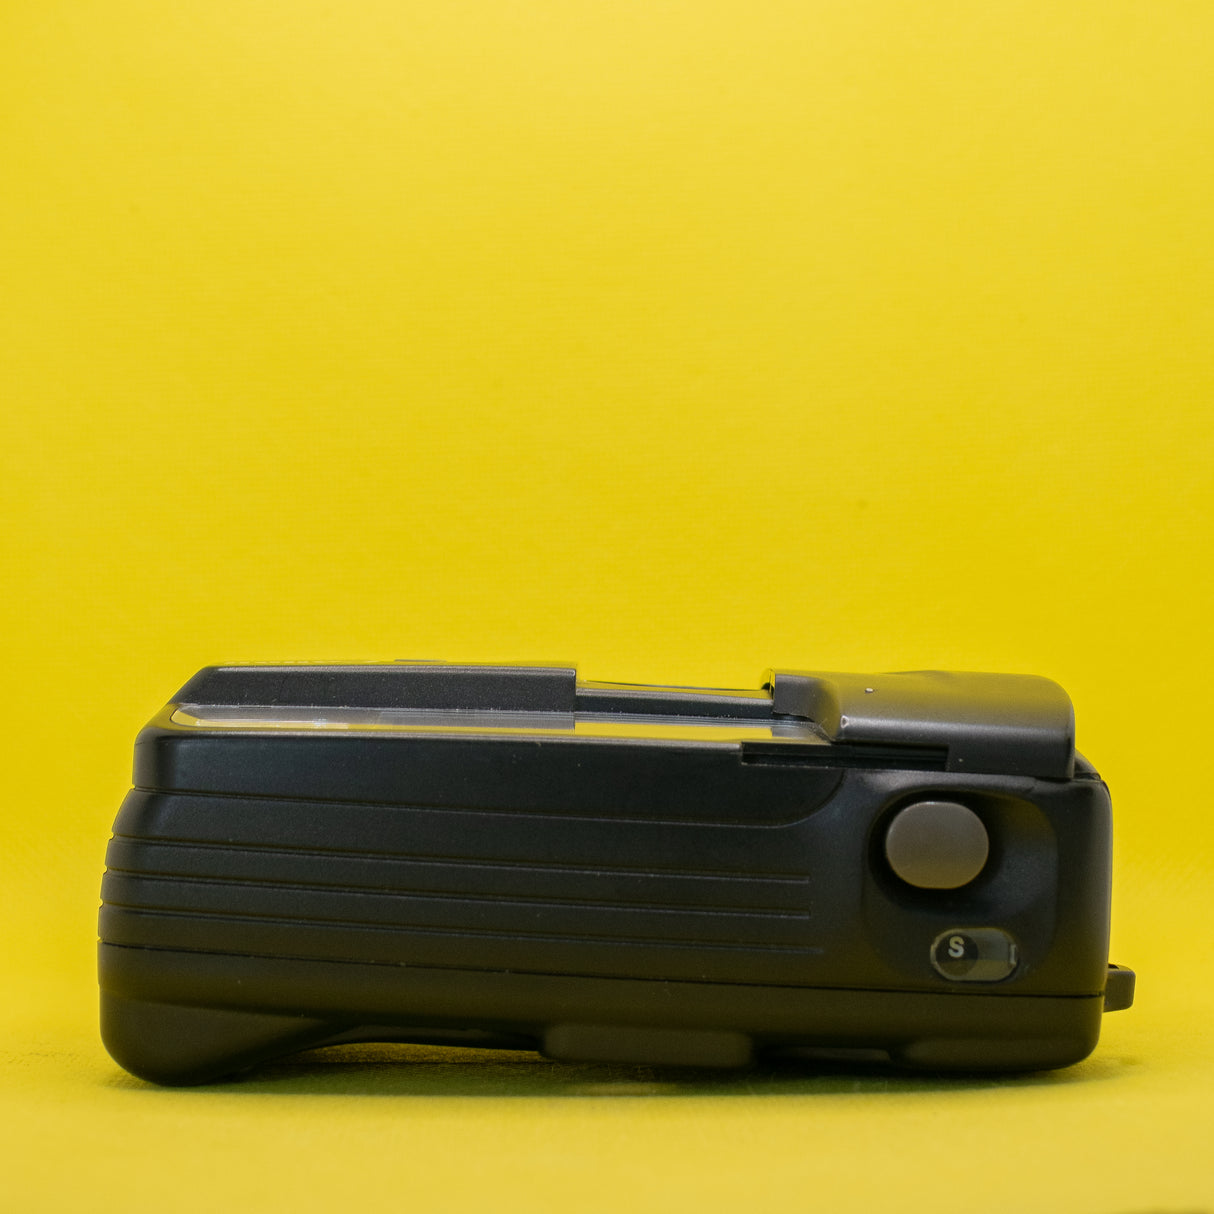 Canon Prima Junior DX - Fotocamera compatta da 35 mm